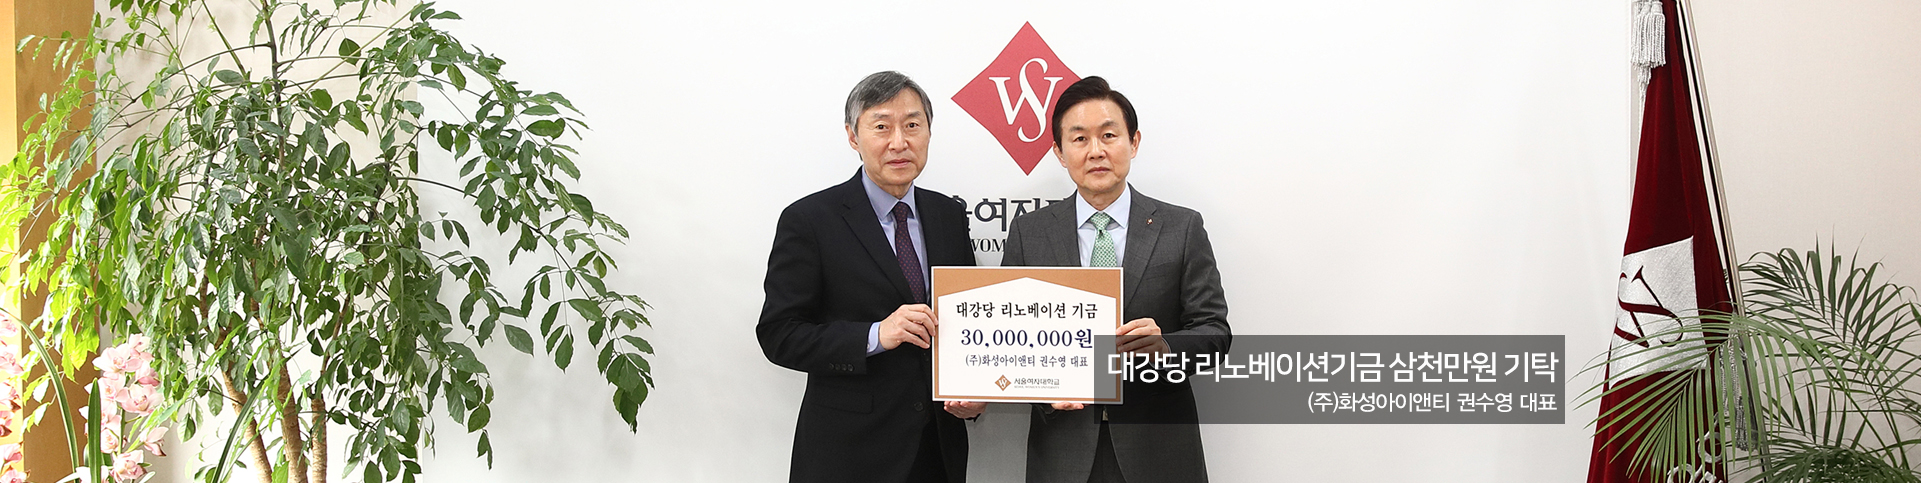 대강당 리노베이션기금 삼천만원 기탁 - (주)화성아이앤티 권수영 대표